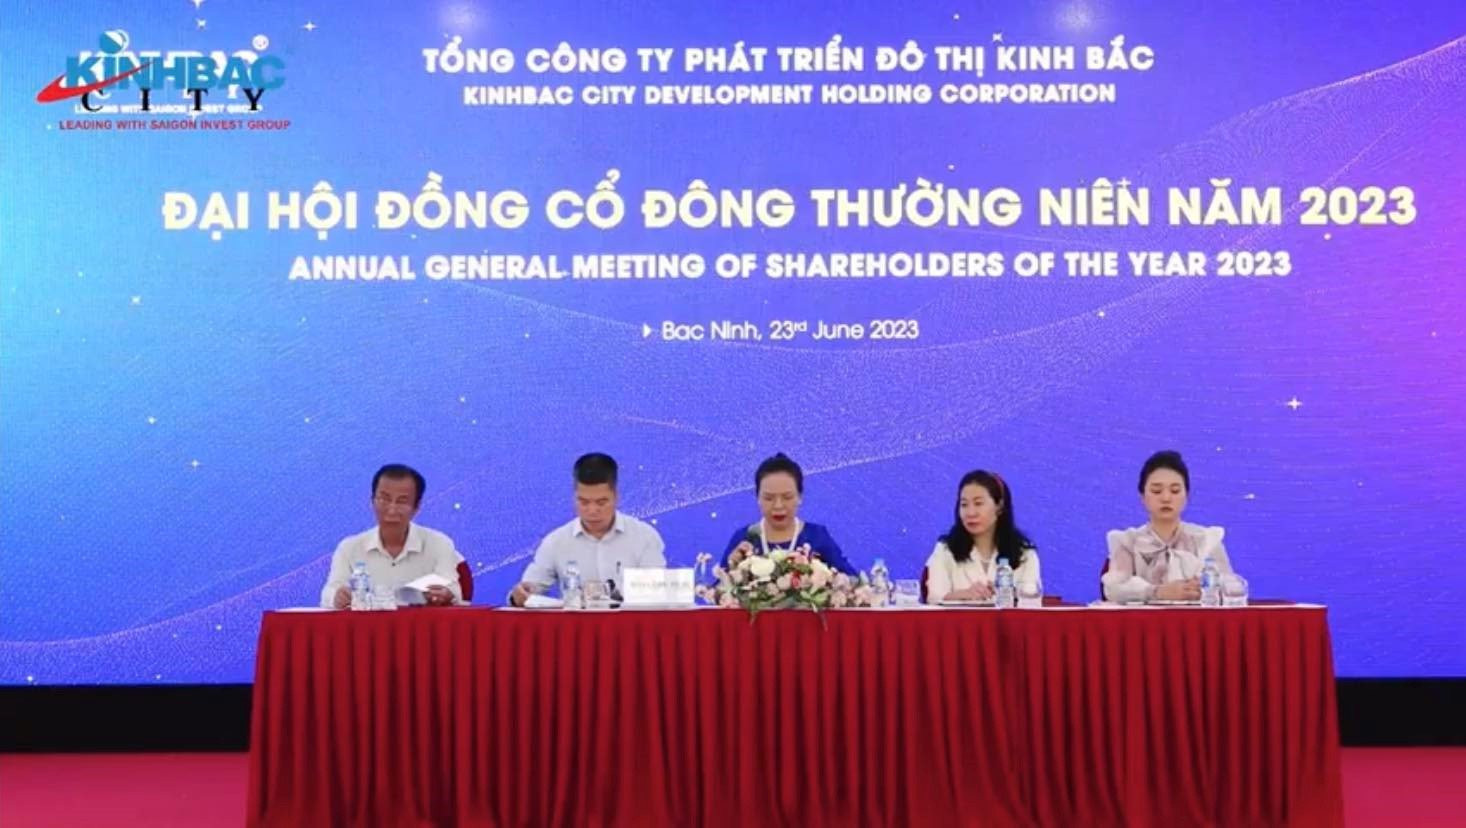 TGĐ Kinh Bắc (KBC) "úp mở" về 1 doanh nghiệp FDI lớn dự kiến thuê nốt phần còn lại của KCN Nam Sơn Hạp Lĩnh, đầu tư hàng tỷ USD 